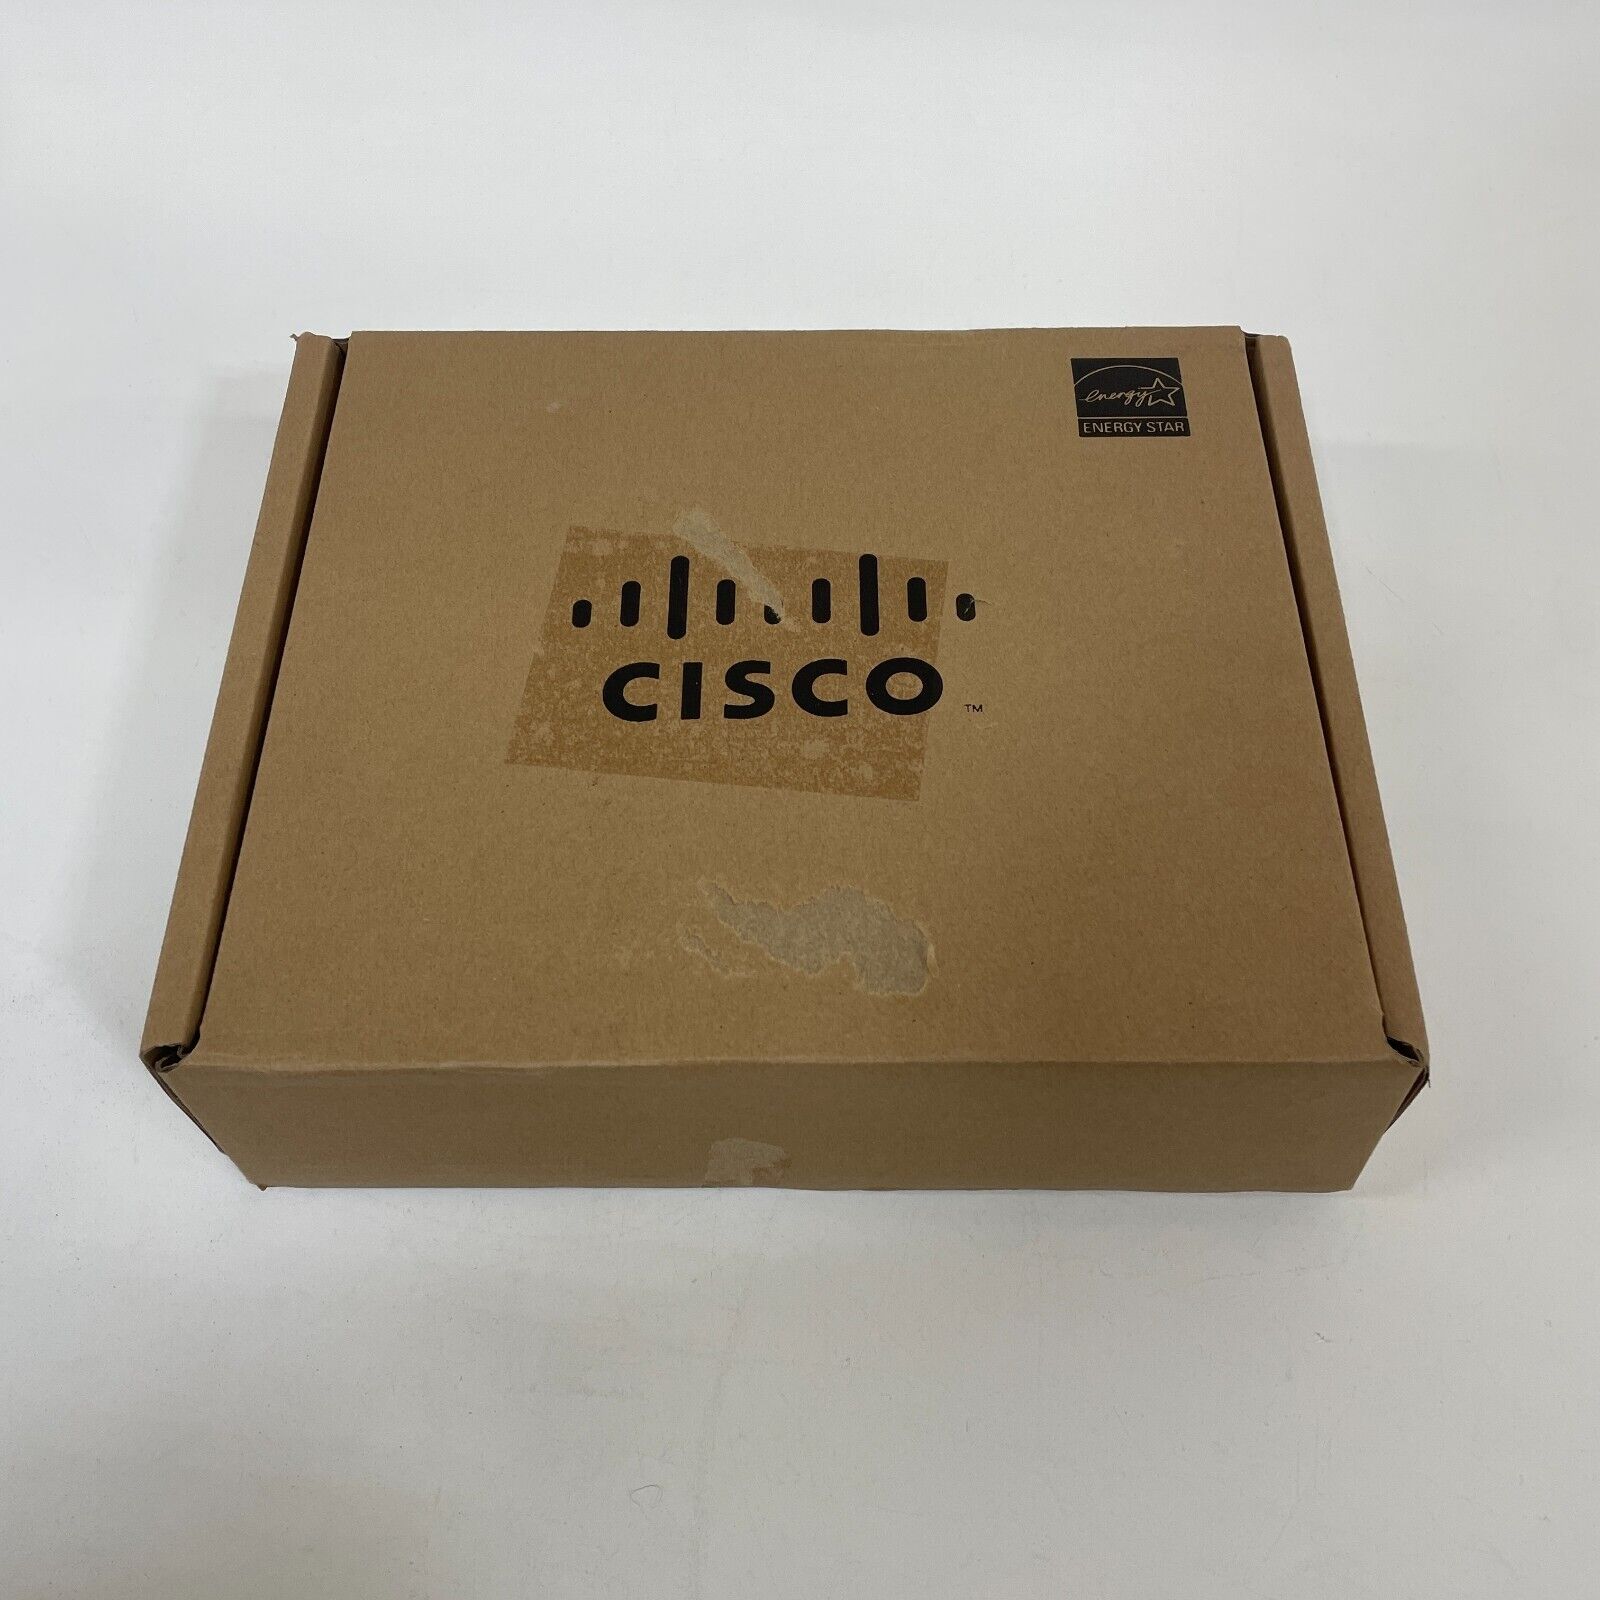 Cisco CP-7841-K9 VoIP IP Phone